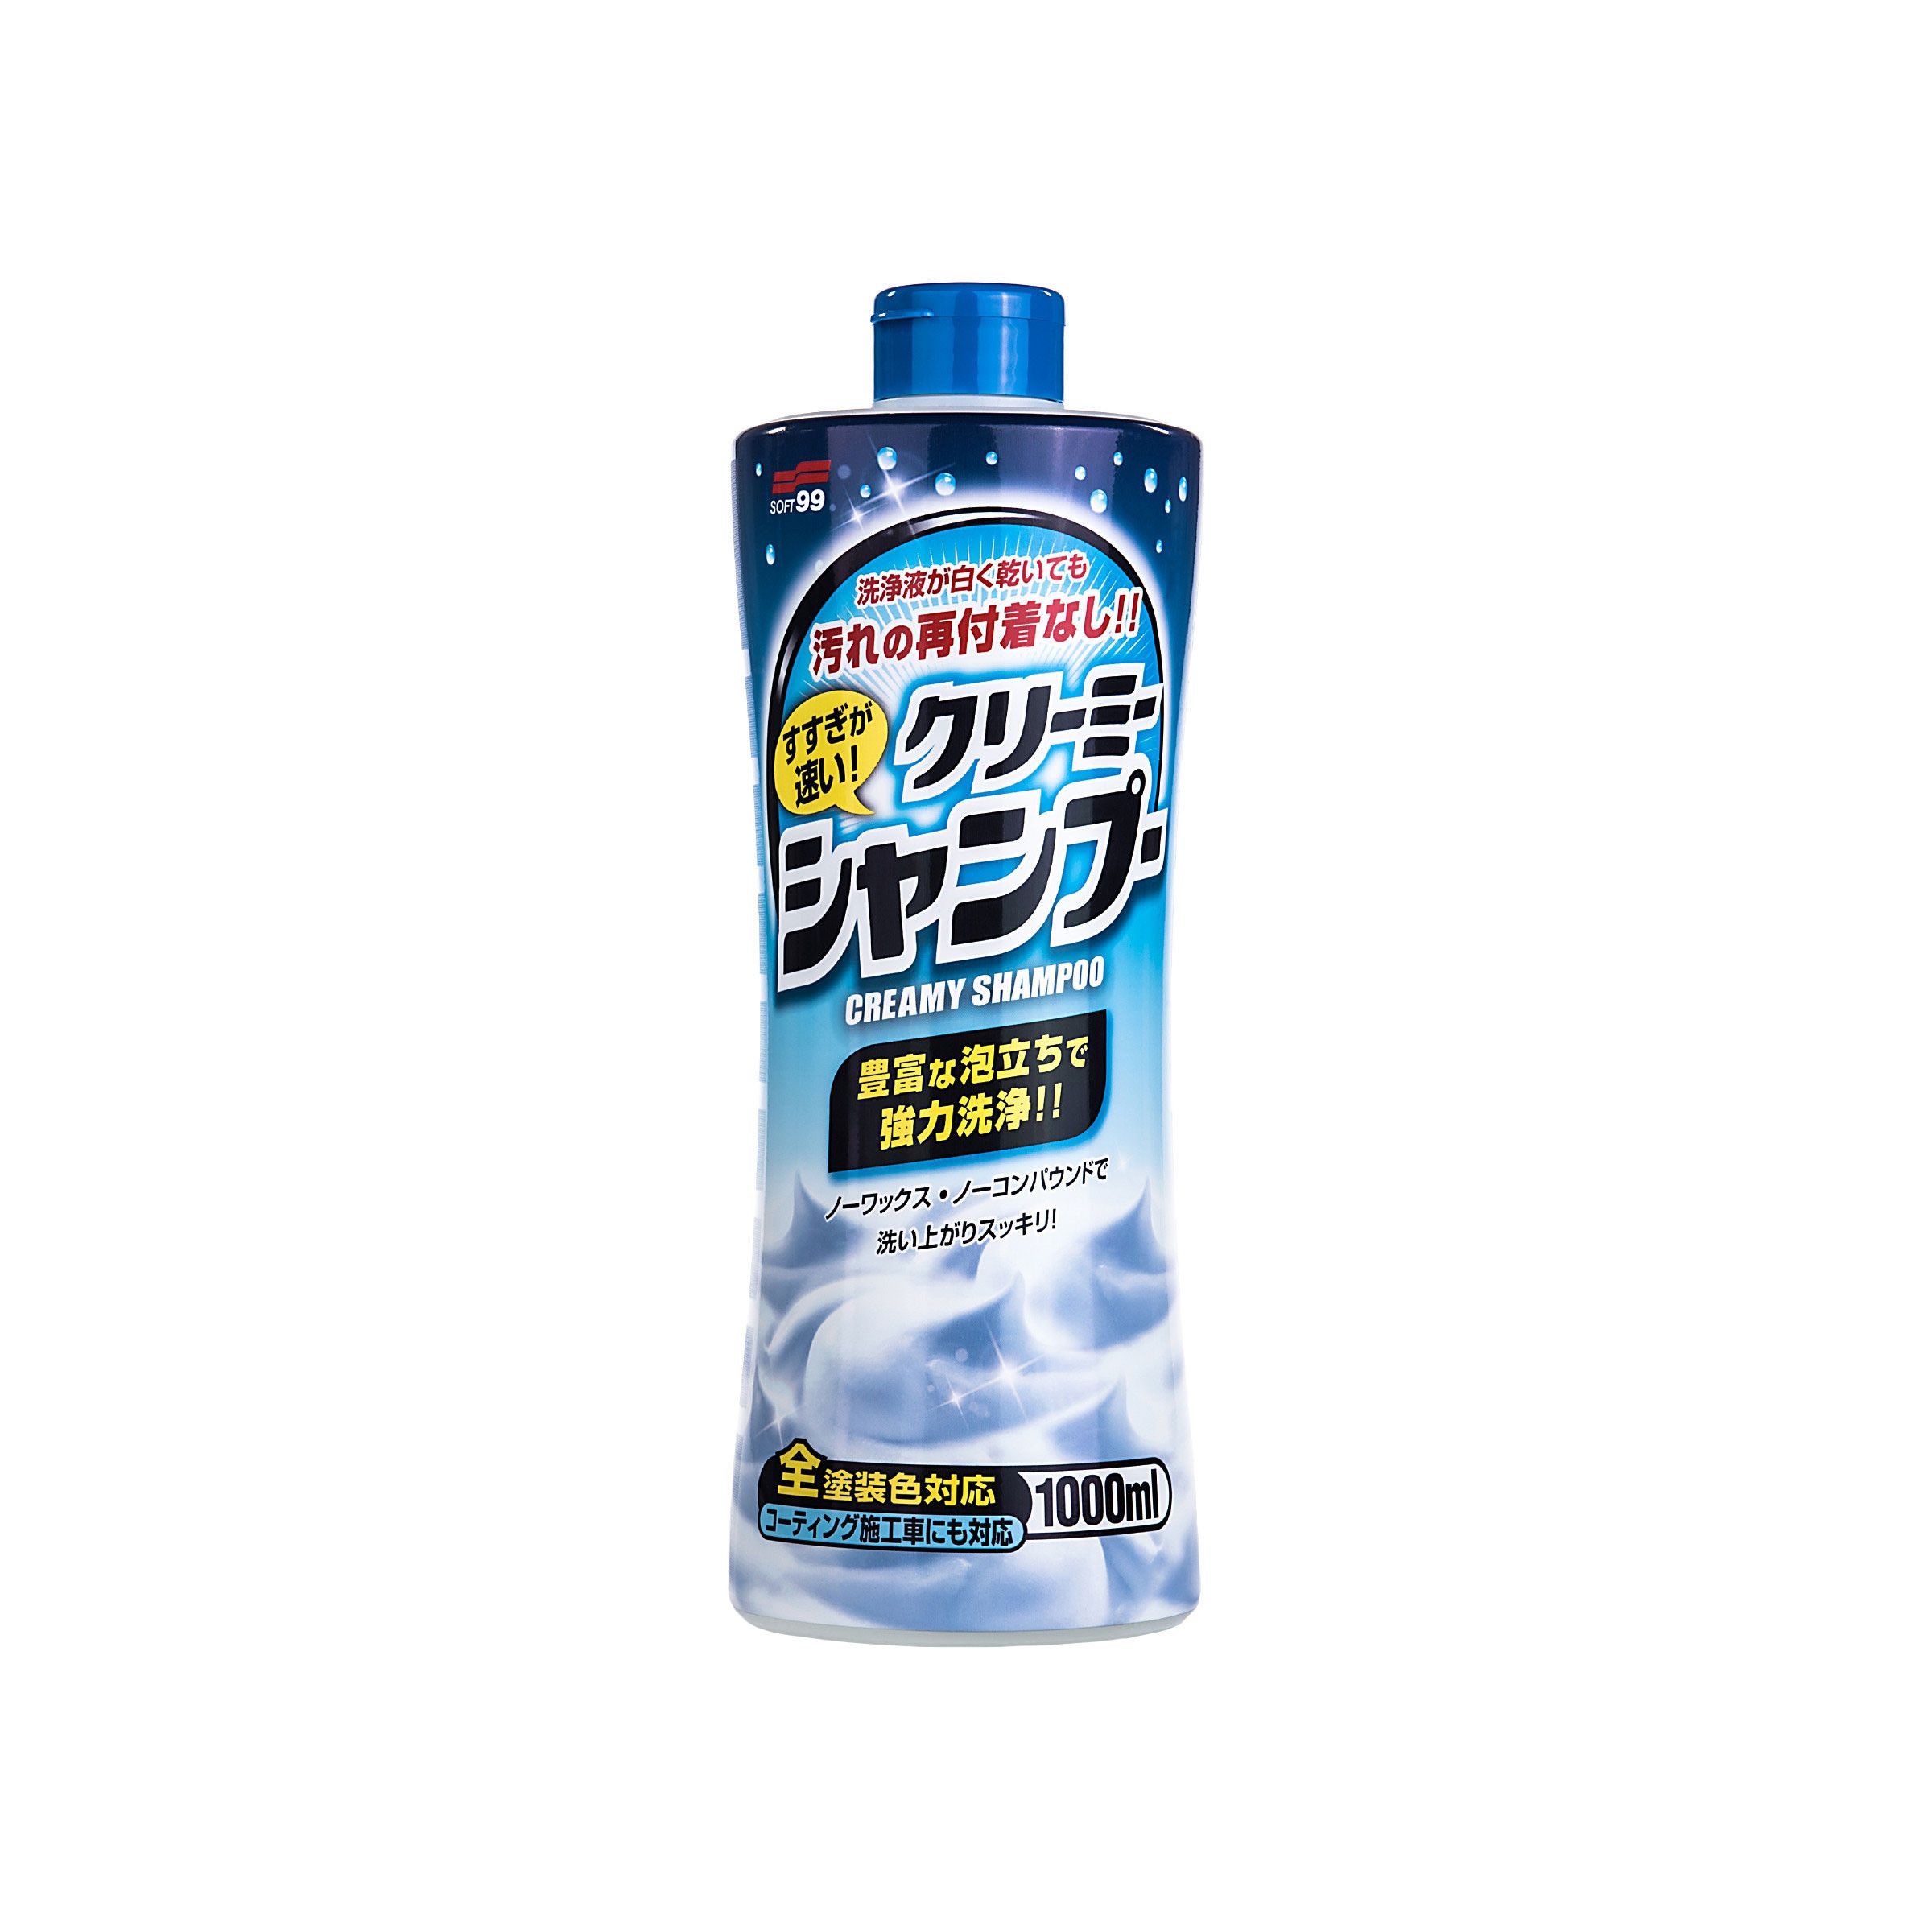 Neutral Creamy Shampoo, szampon samochodowy, 1000 ml